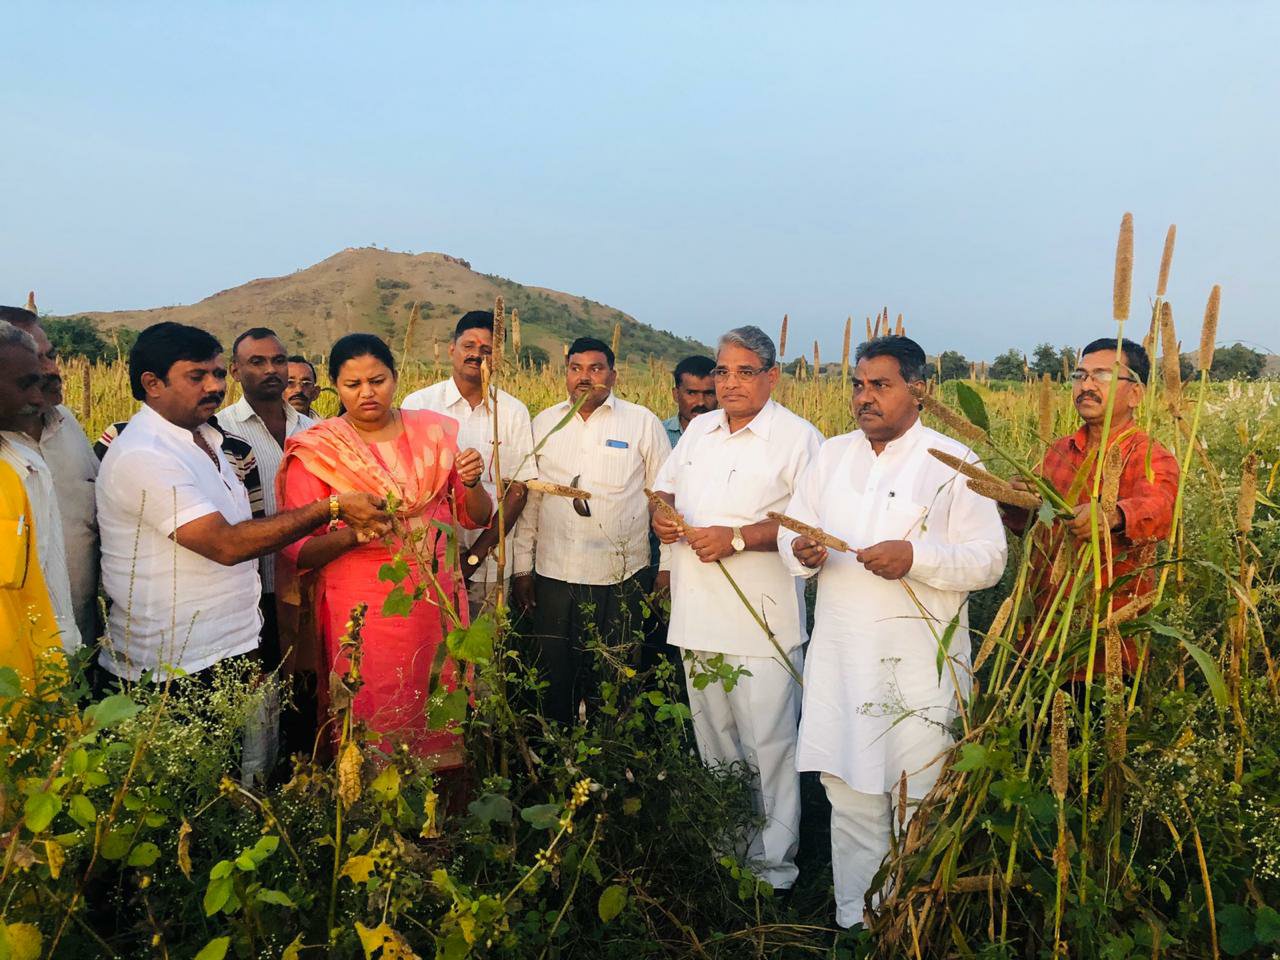 केंद्र तथा राज्य सरकार किसानों की हरसंभव सहायता करने के लिए है तत्पर, जल्दी मिलेग मुआवजा: हिना गावित | New India Times